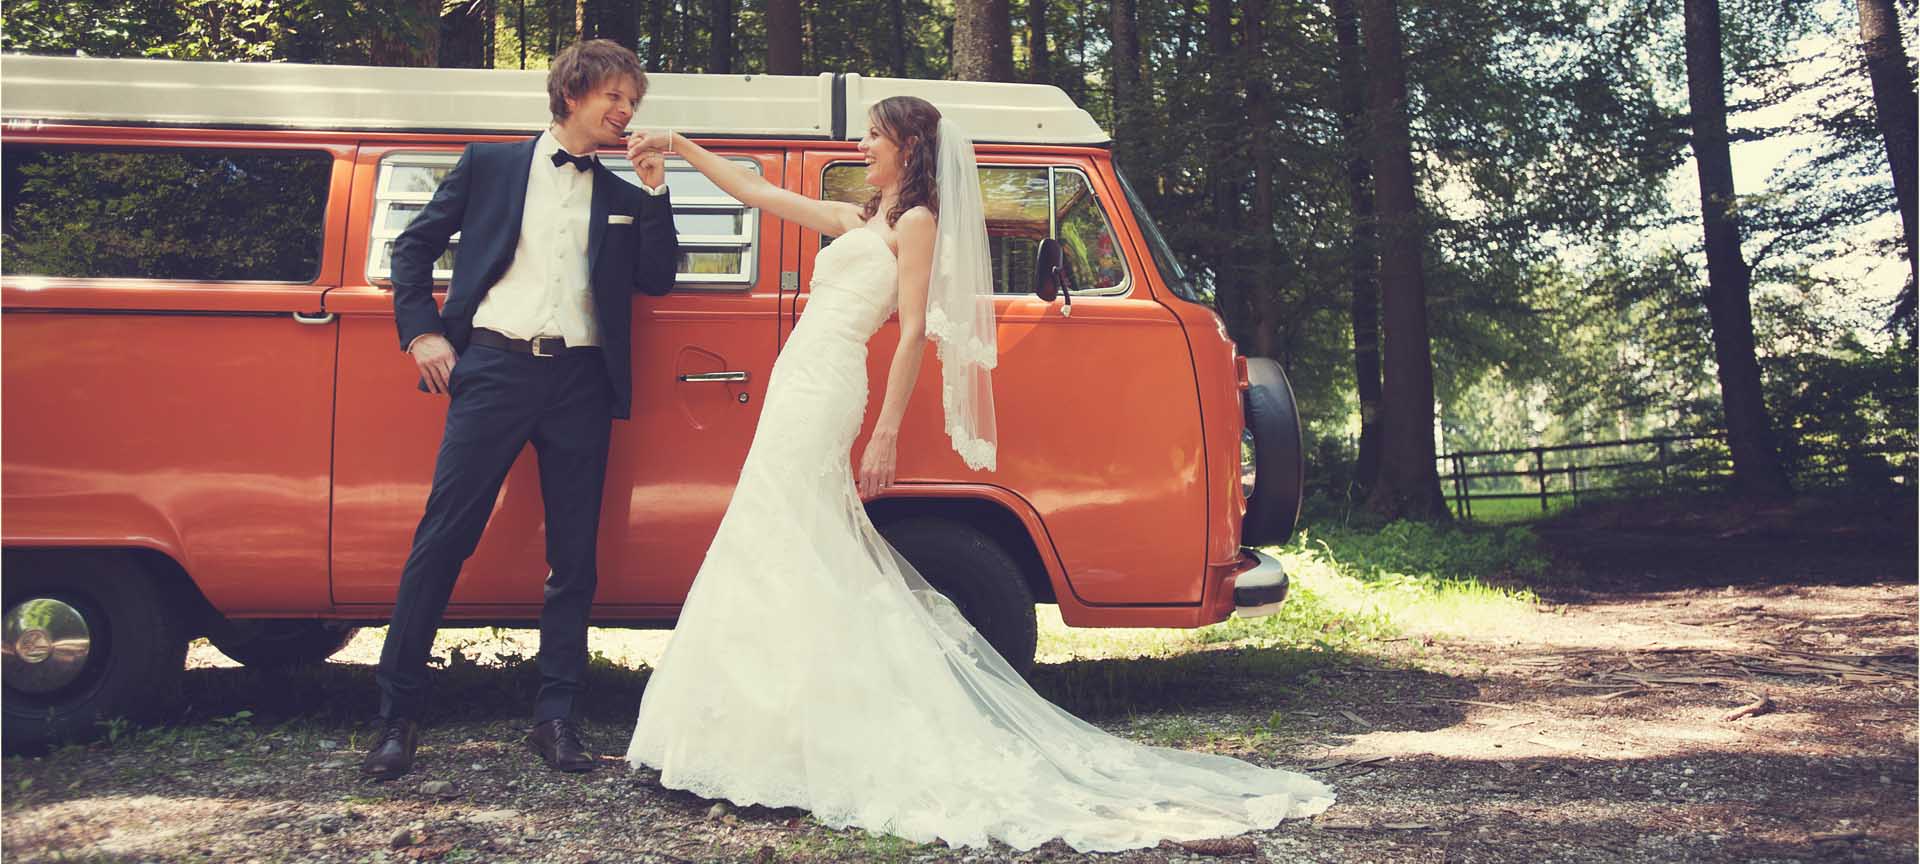 Le marié embrasse main de la mariée souriante devant combi VW vintage dans forêt bernoise